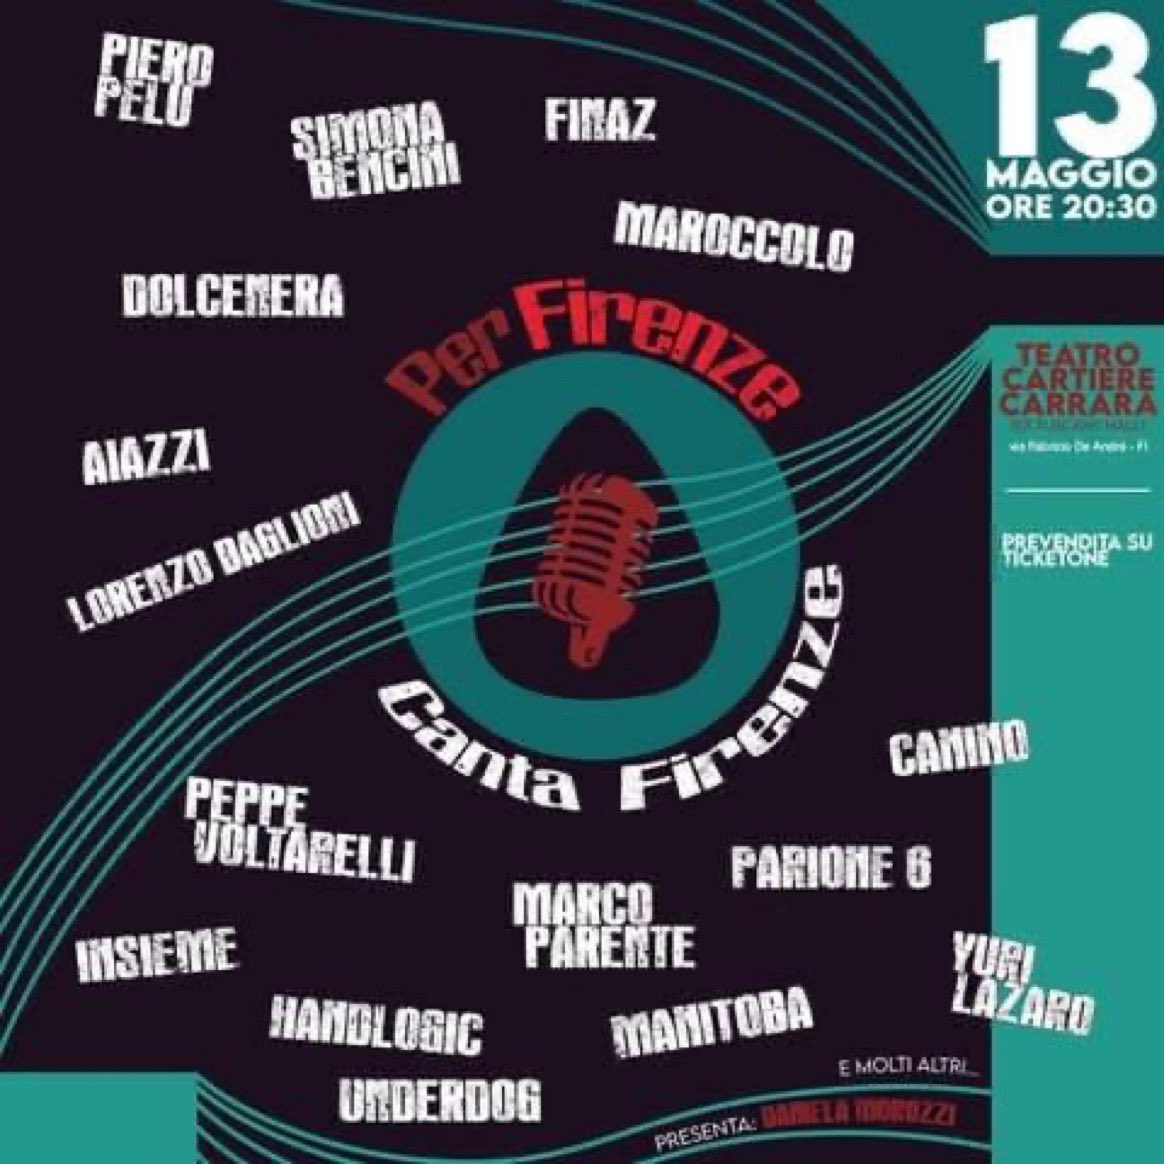 Domani a Firenze tanti amici in una serata unica di solidarietà… con tante sorprese ♥️ #perfirenzecantafirenze #teatrocantierecarrara  #13maggio